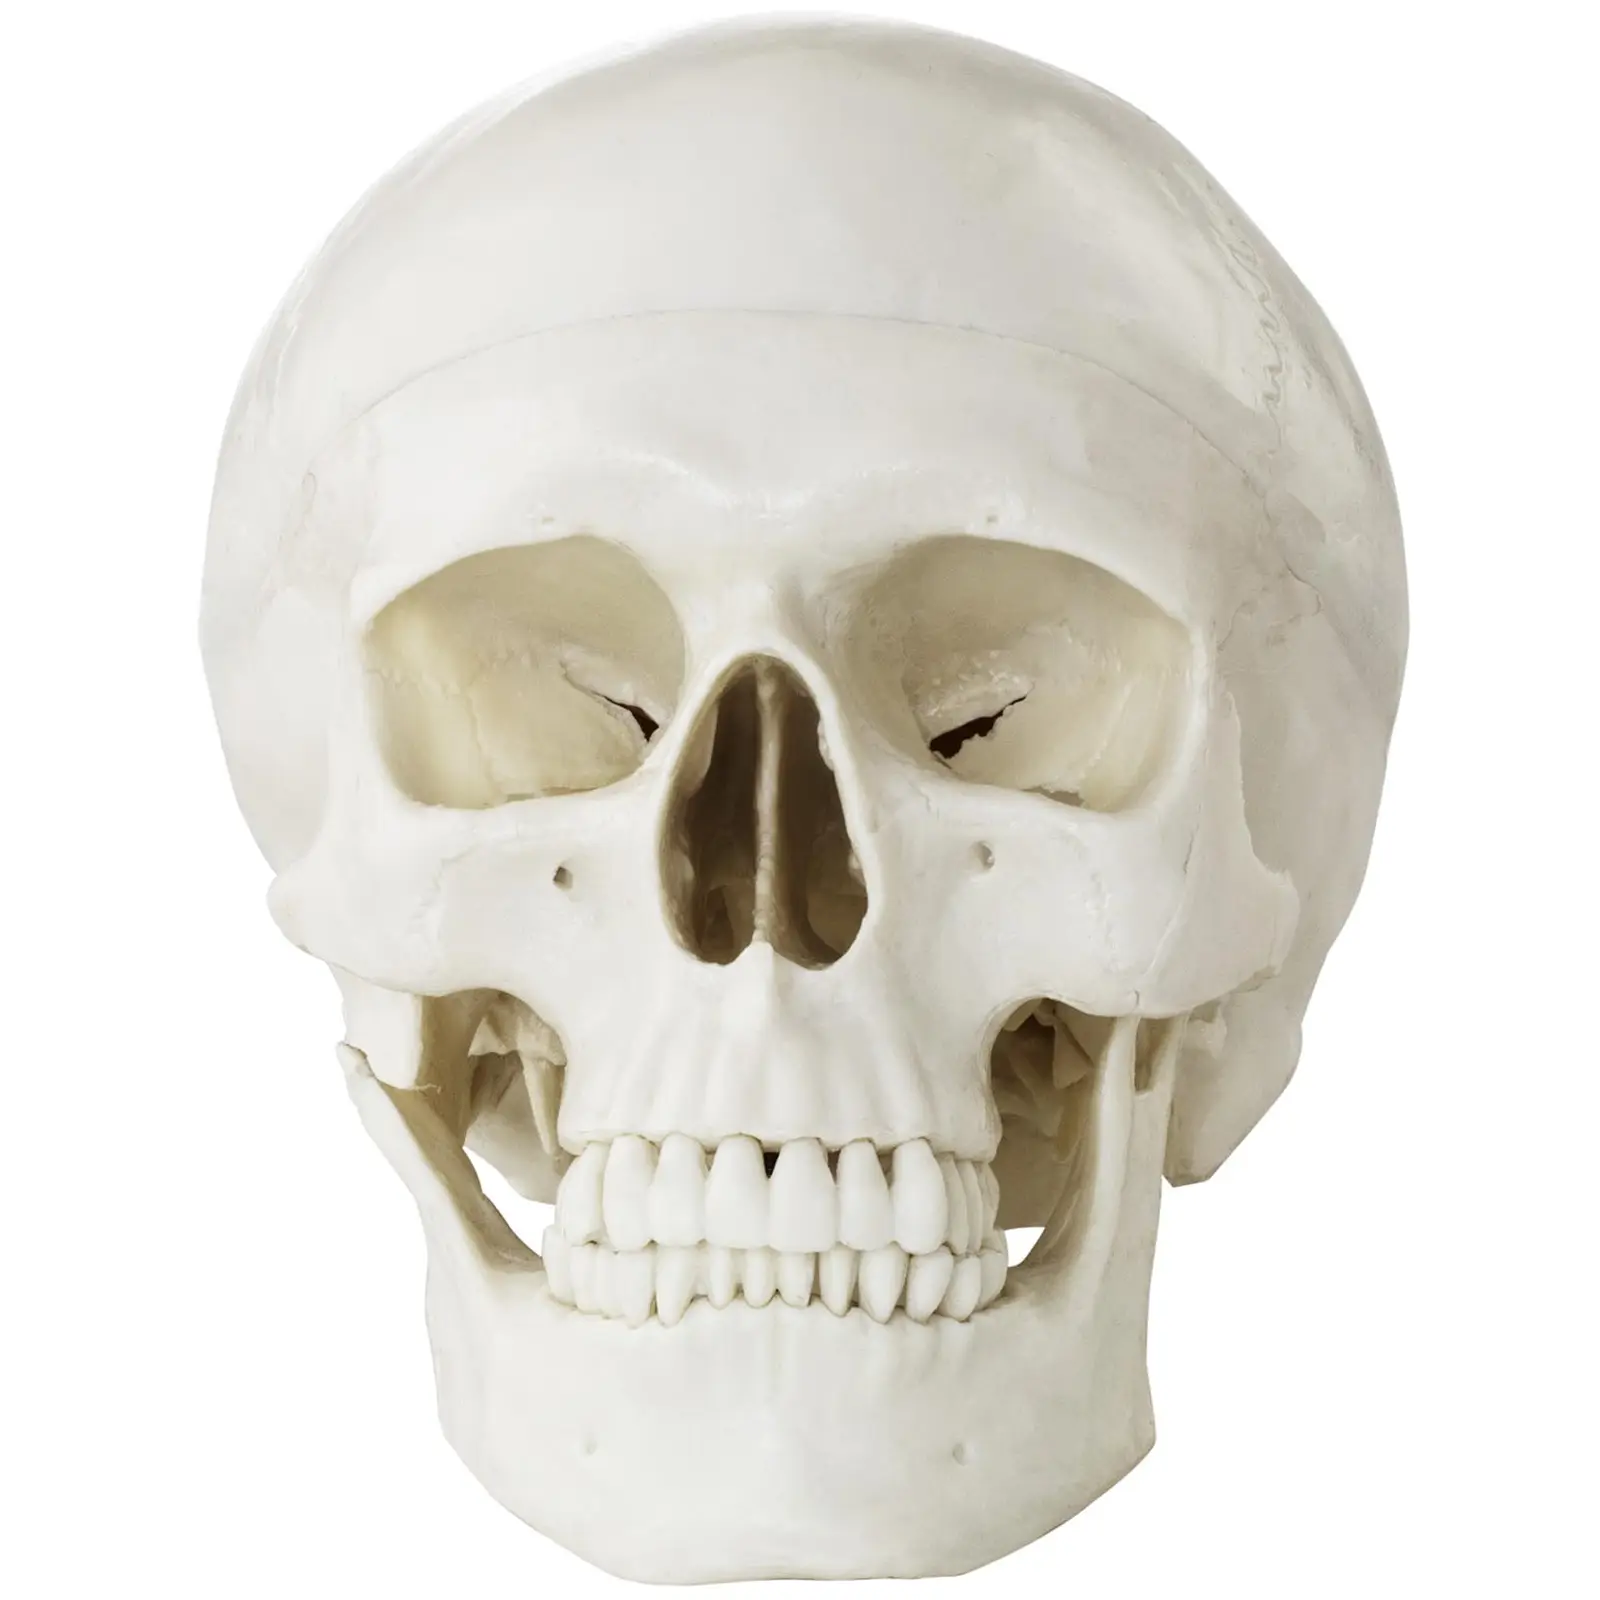 Factory second Skull Model - white